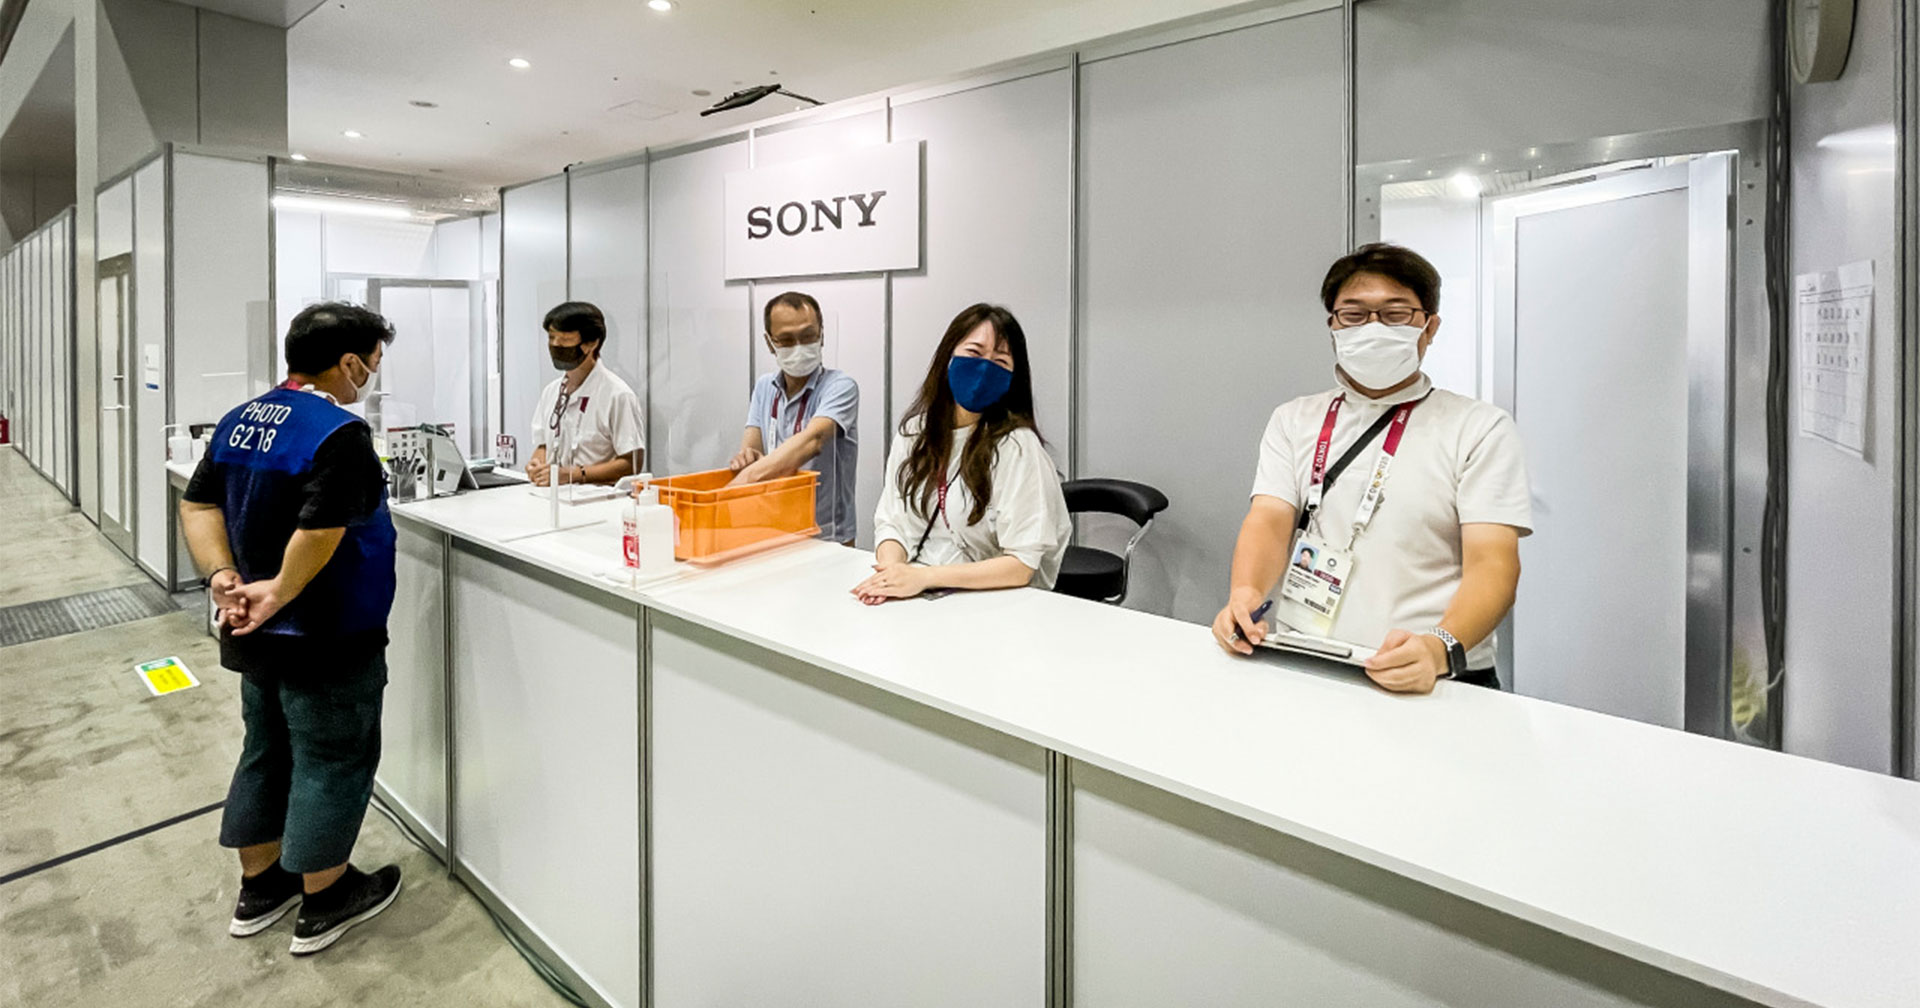 พาชม Sony Pro Services ศูนย์บริการช่างภาพในโตเกียวโอลิมปิก 2020